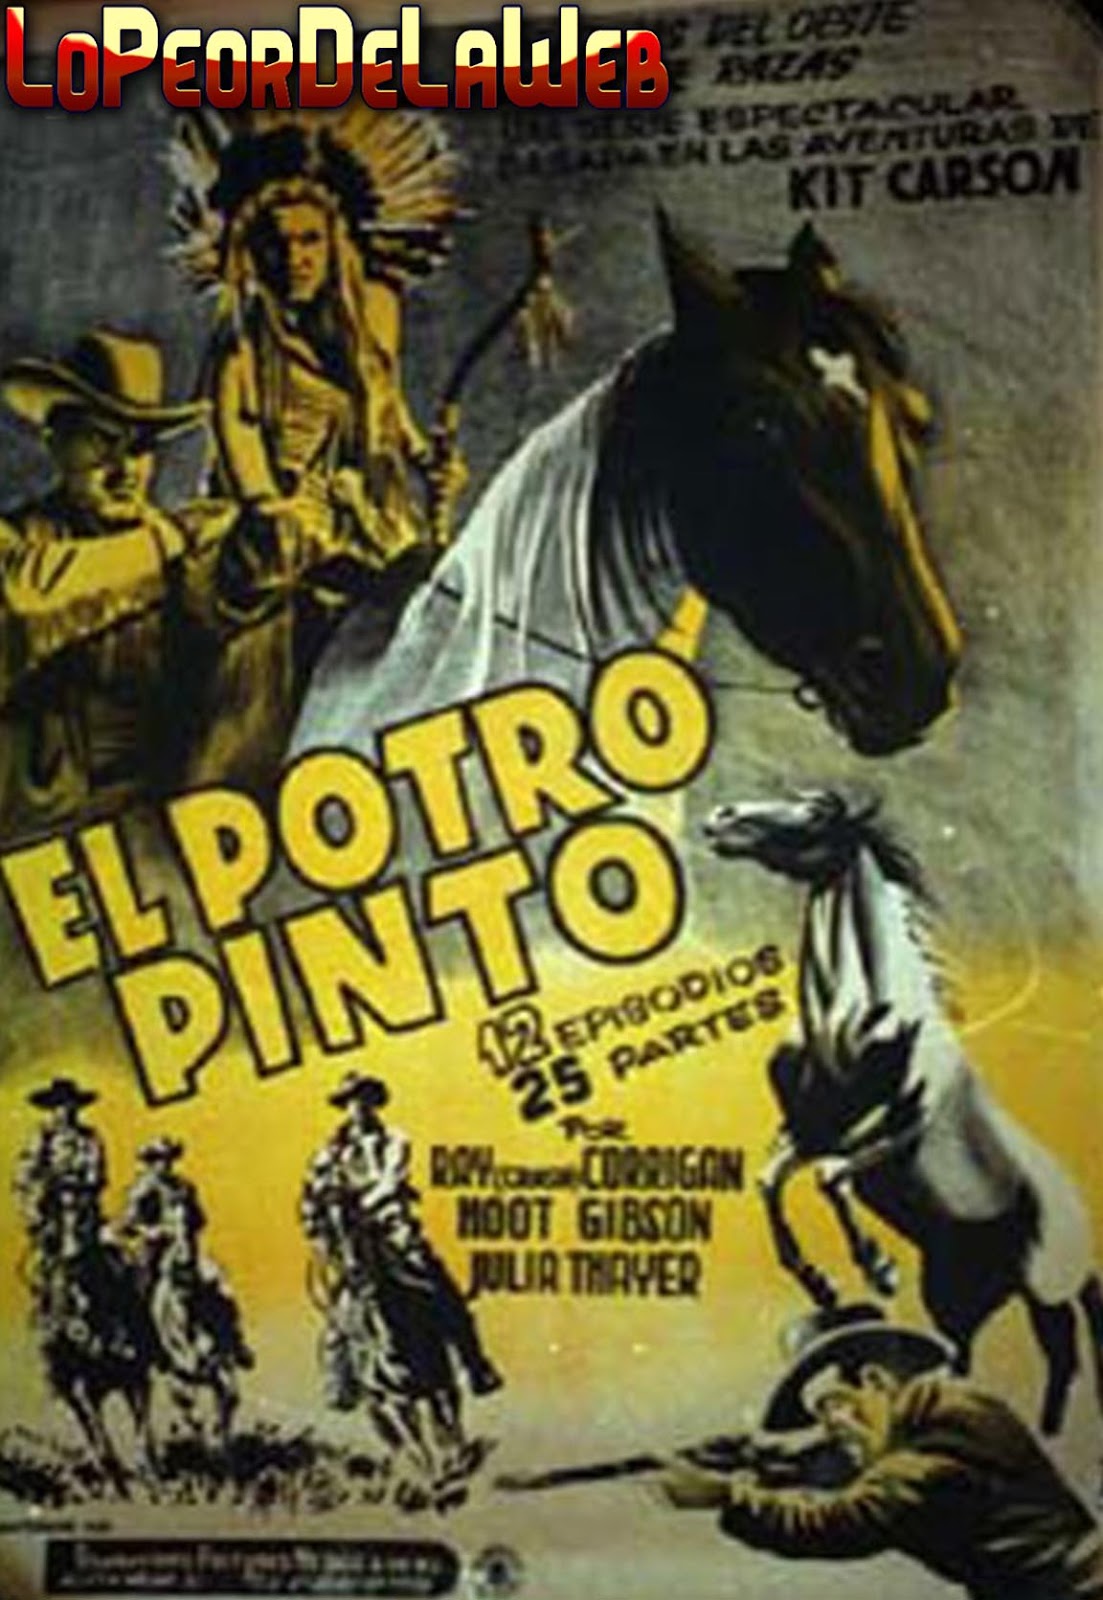 El Potro Pinto /Serie Western Completa / 1937 / 12 episodios